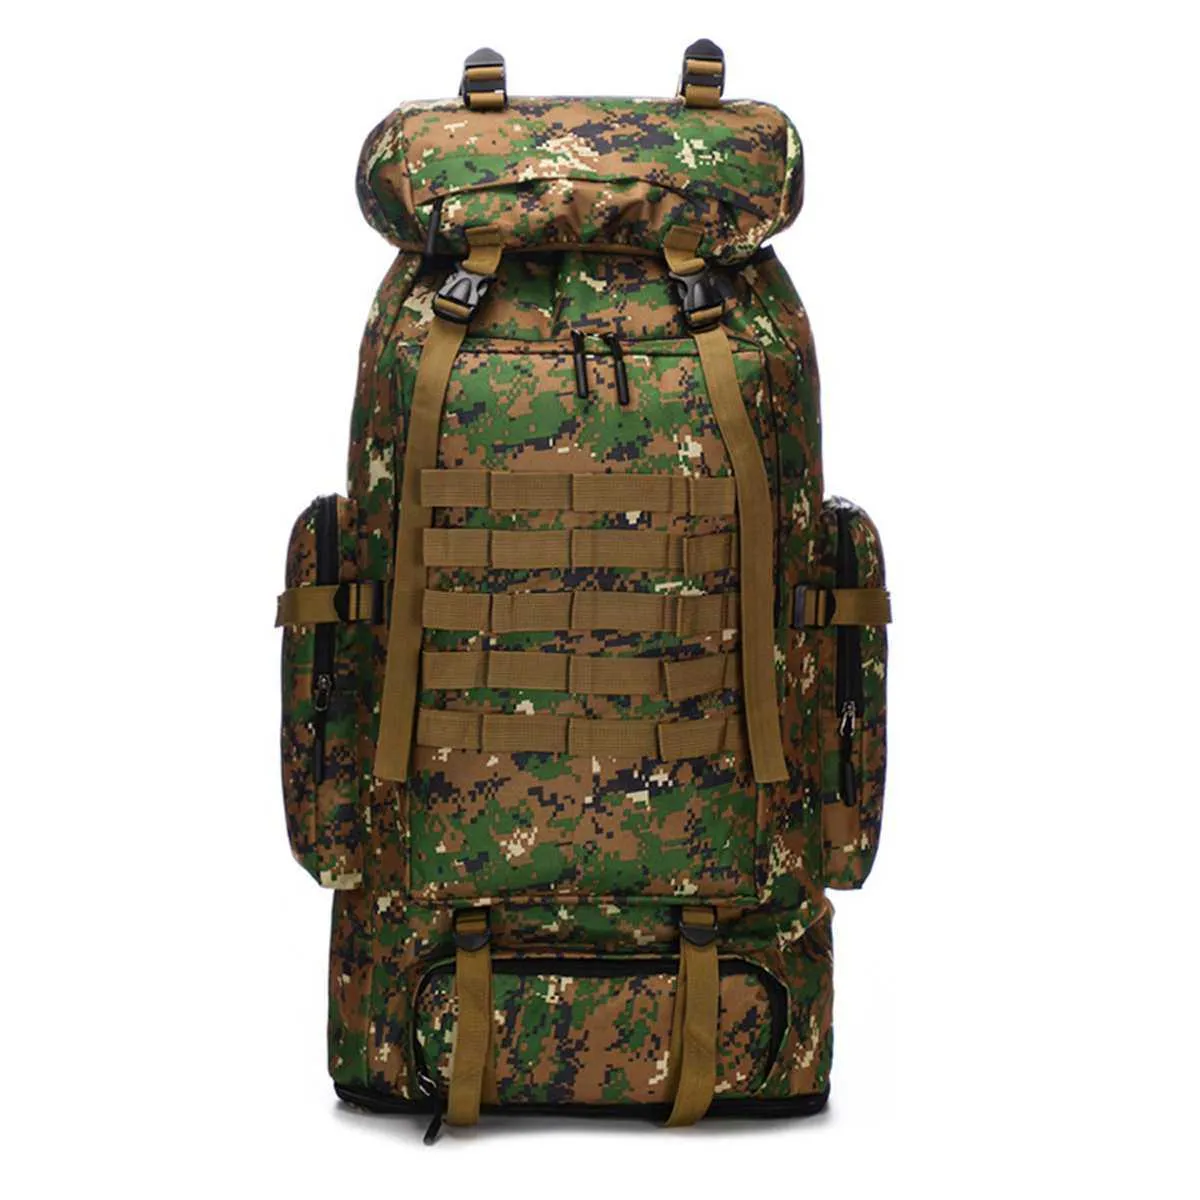 100L grande mochila militar campismo molle camping sacucksack mochila tático homens caminhadas escalada viagem ao ar livre esporte sacos mochilas